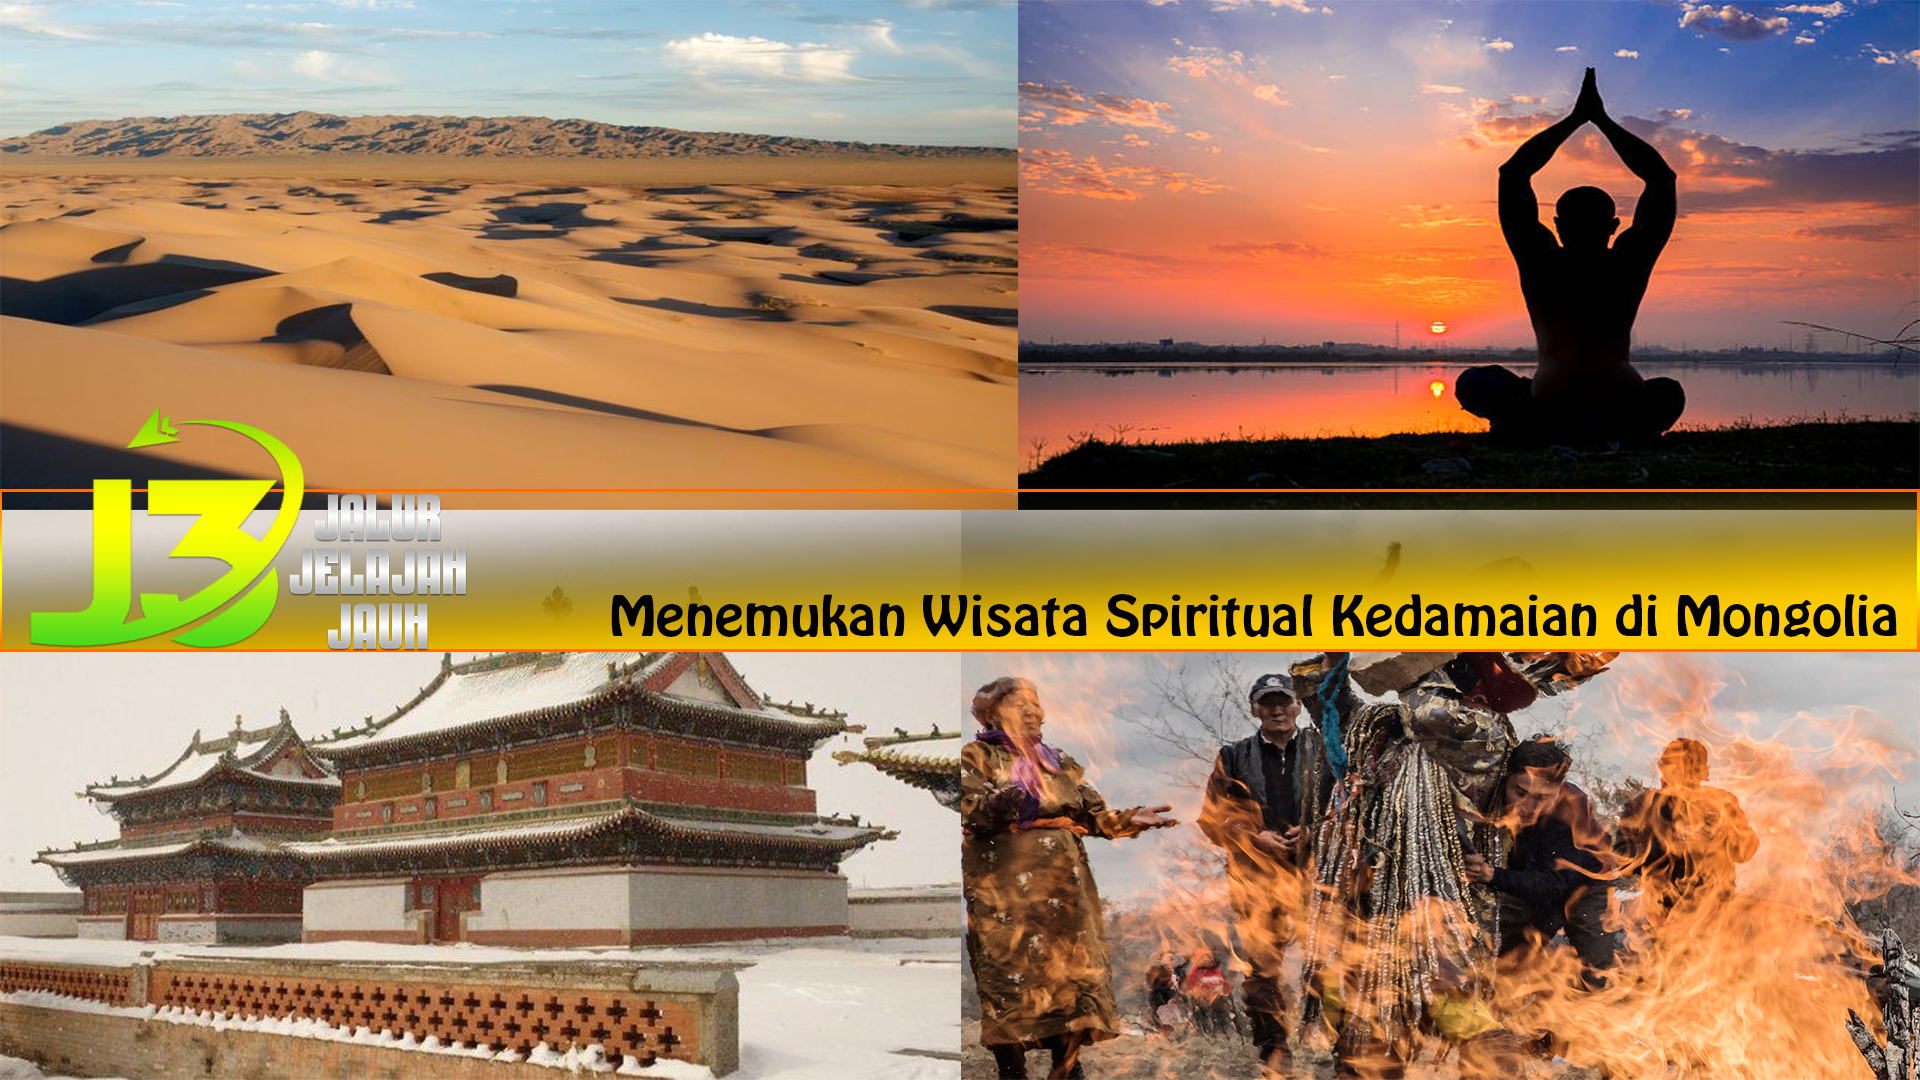 Menemukan Wisata Spiritual Kedamaian di Mongolia